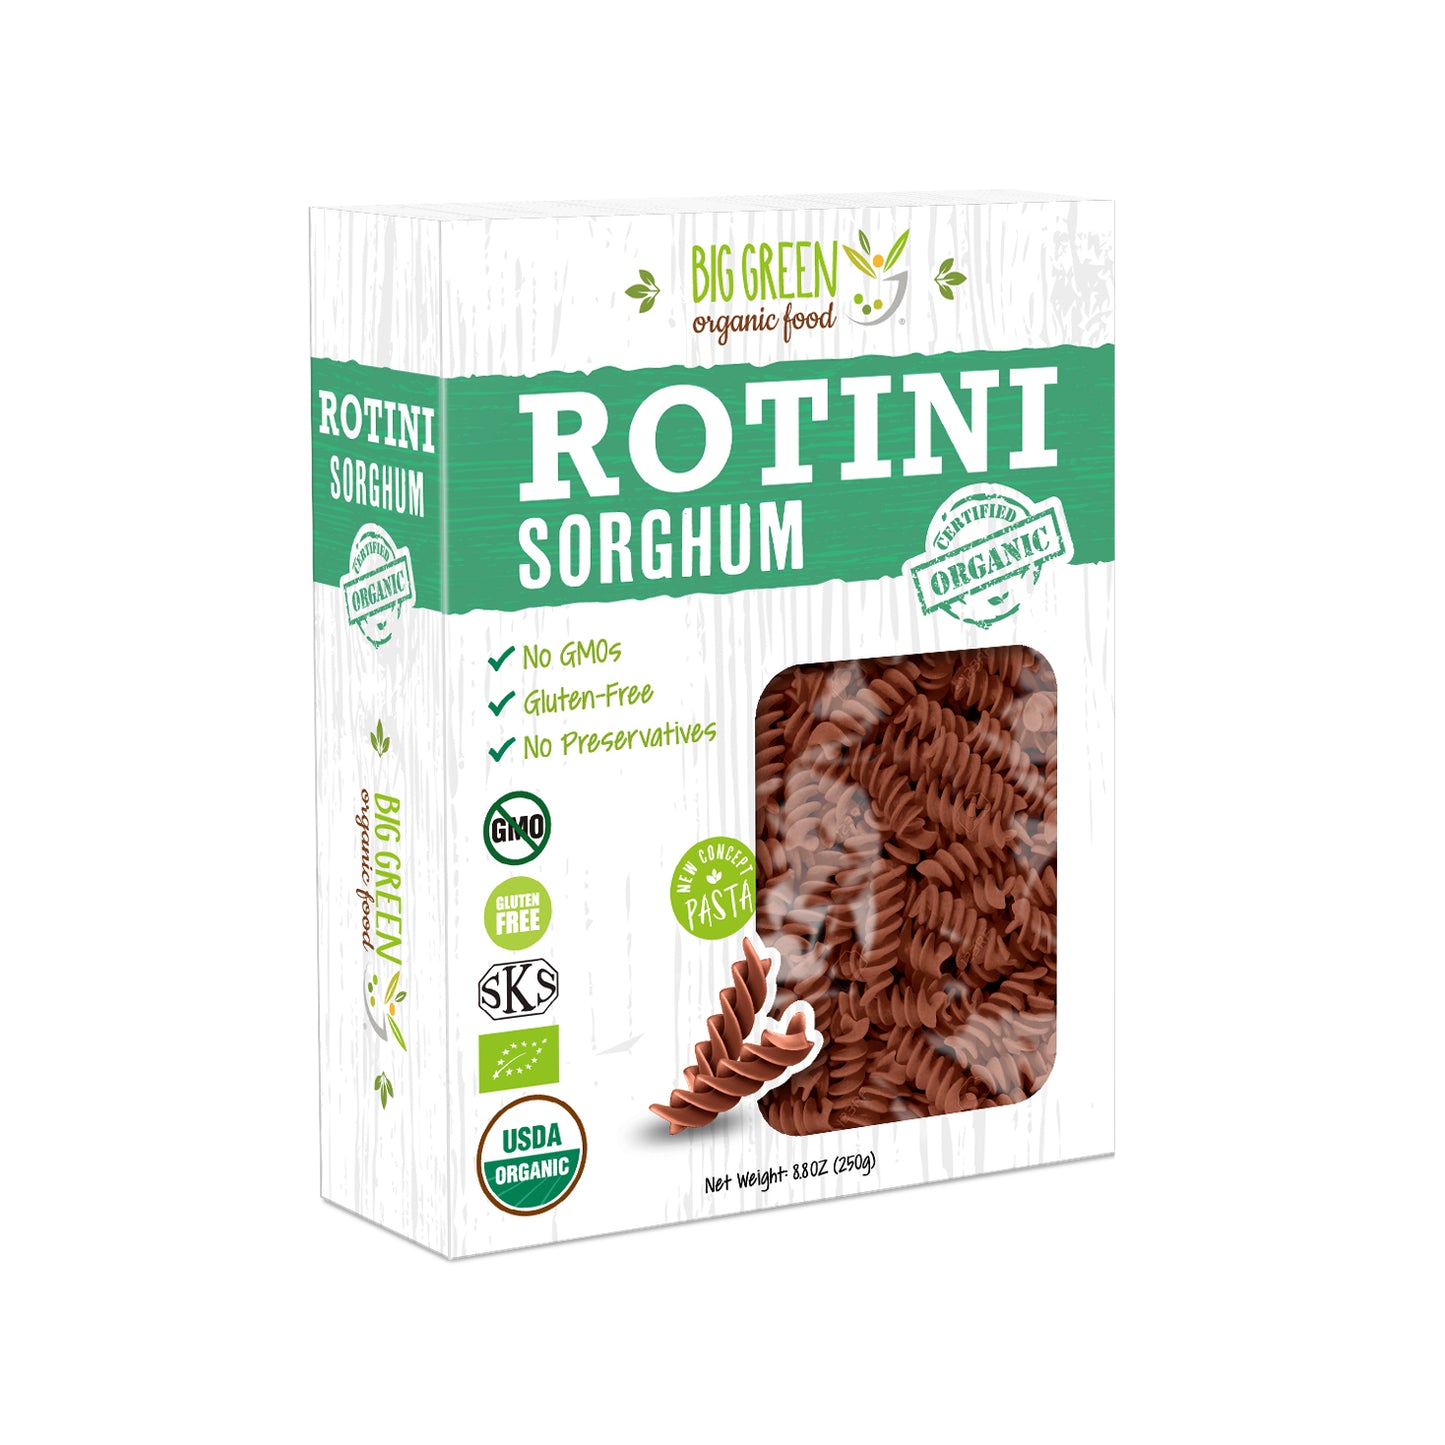 Big Green Organic Food Organic Sorghum Rotini 有機高粱螺旋通心粉